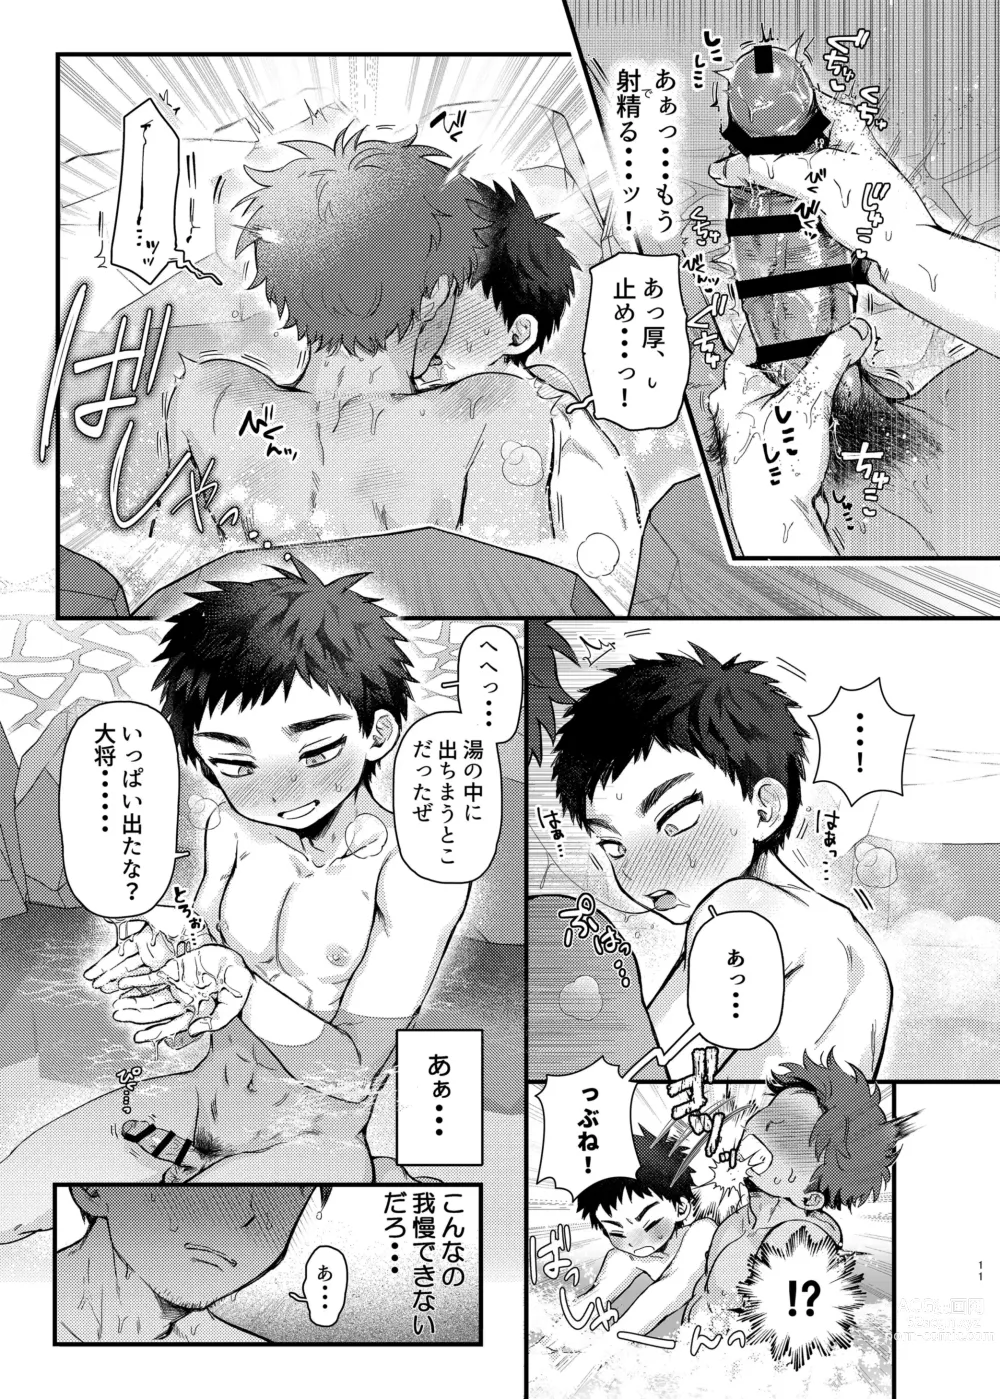 Page 10 of doujinshi Taishou, Nani mo Shinakute Ii no ka?